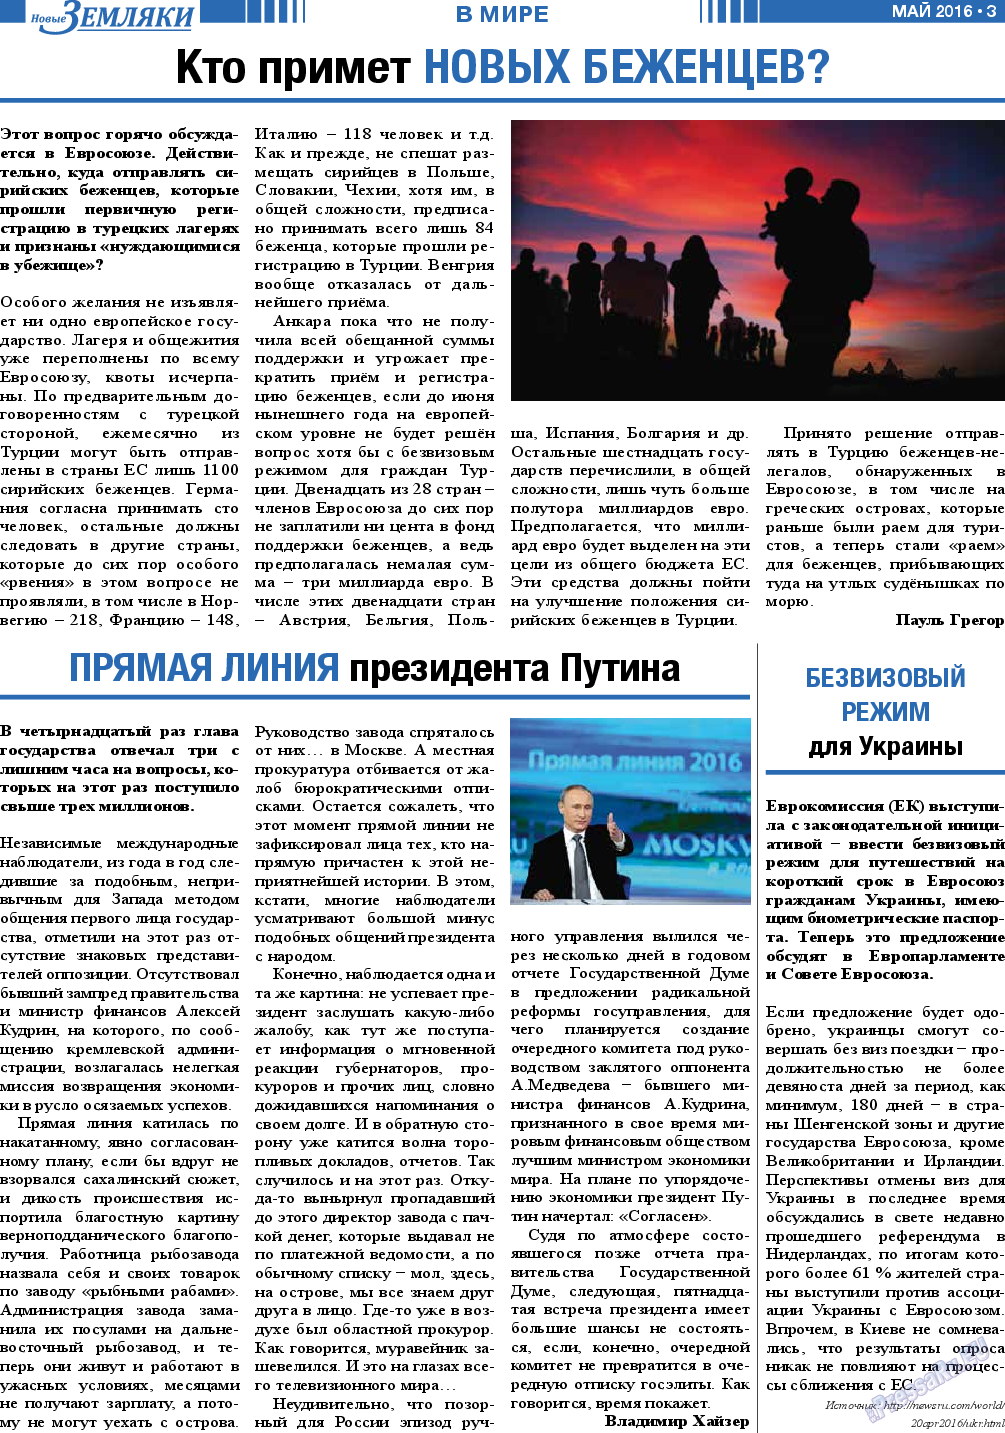 Новые Земляки, газета. 2016 №5 стр.3